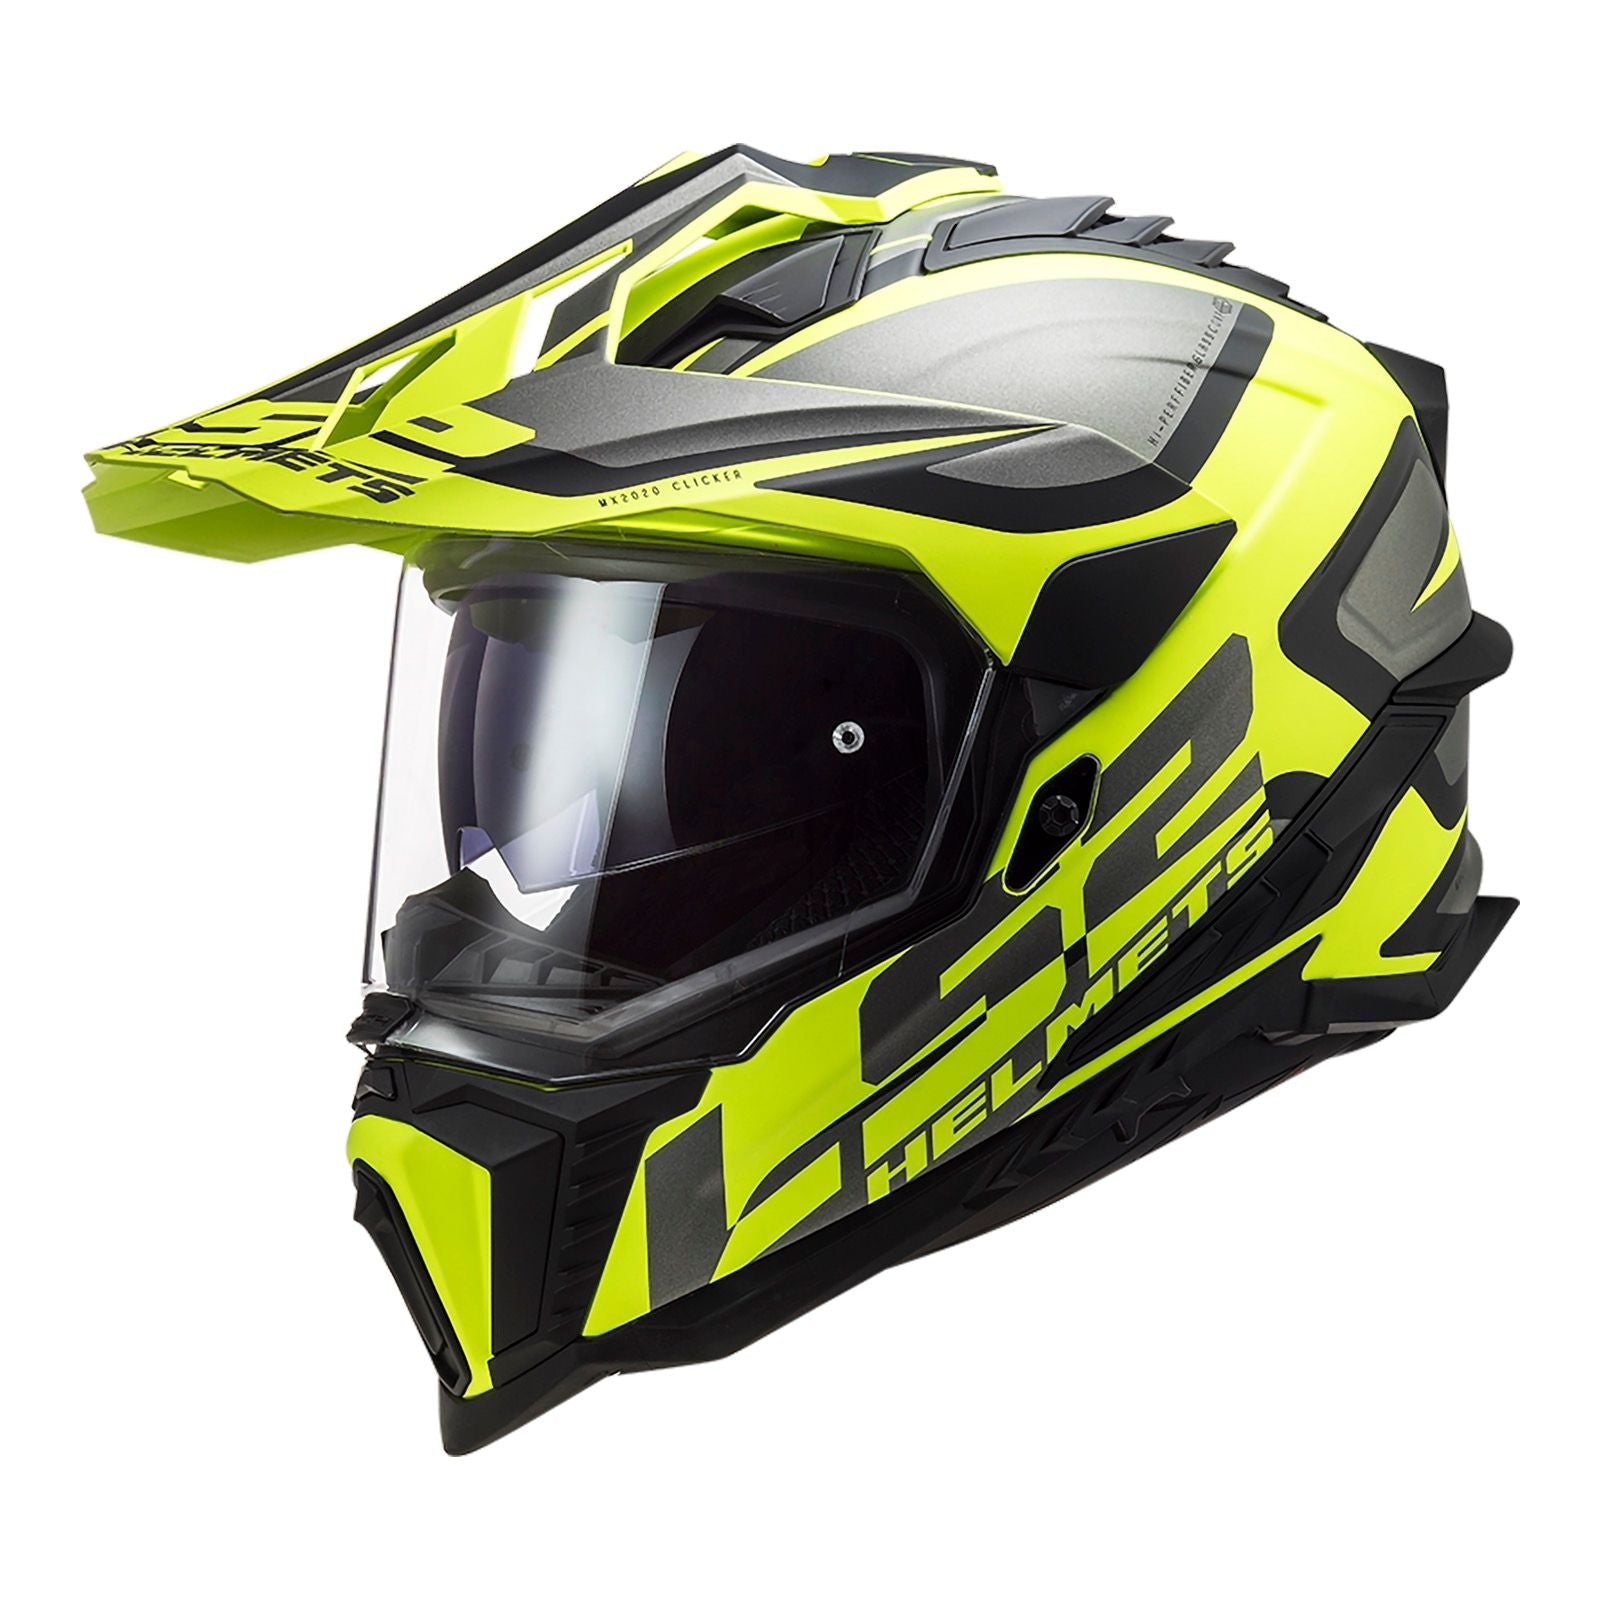 New LS2 Explorer Alter Helmet - Matte Black / Hi-Vis (S) #LS2MX701ALTMBYS